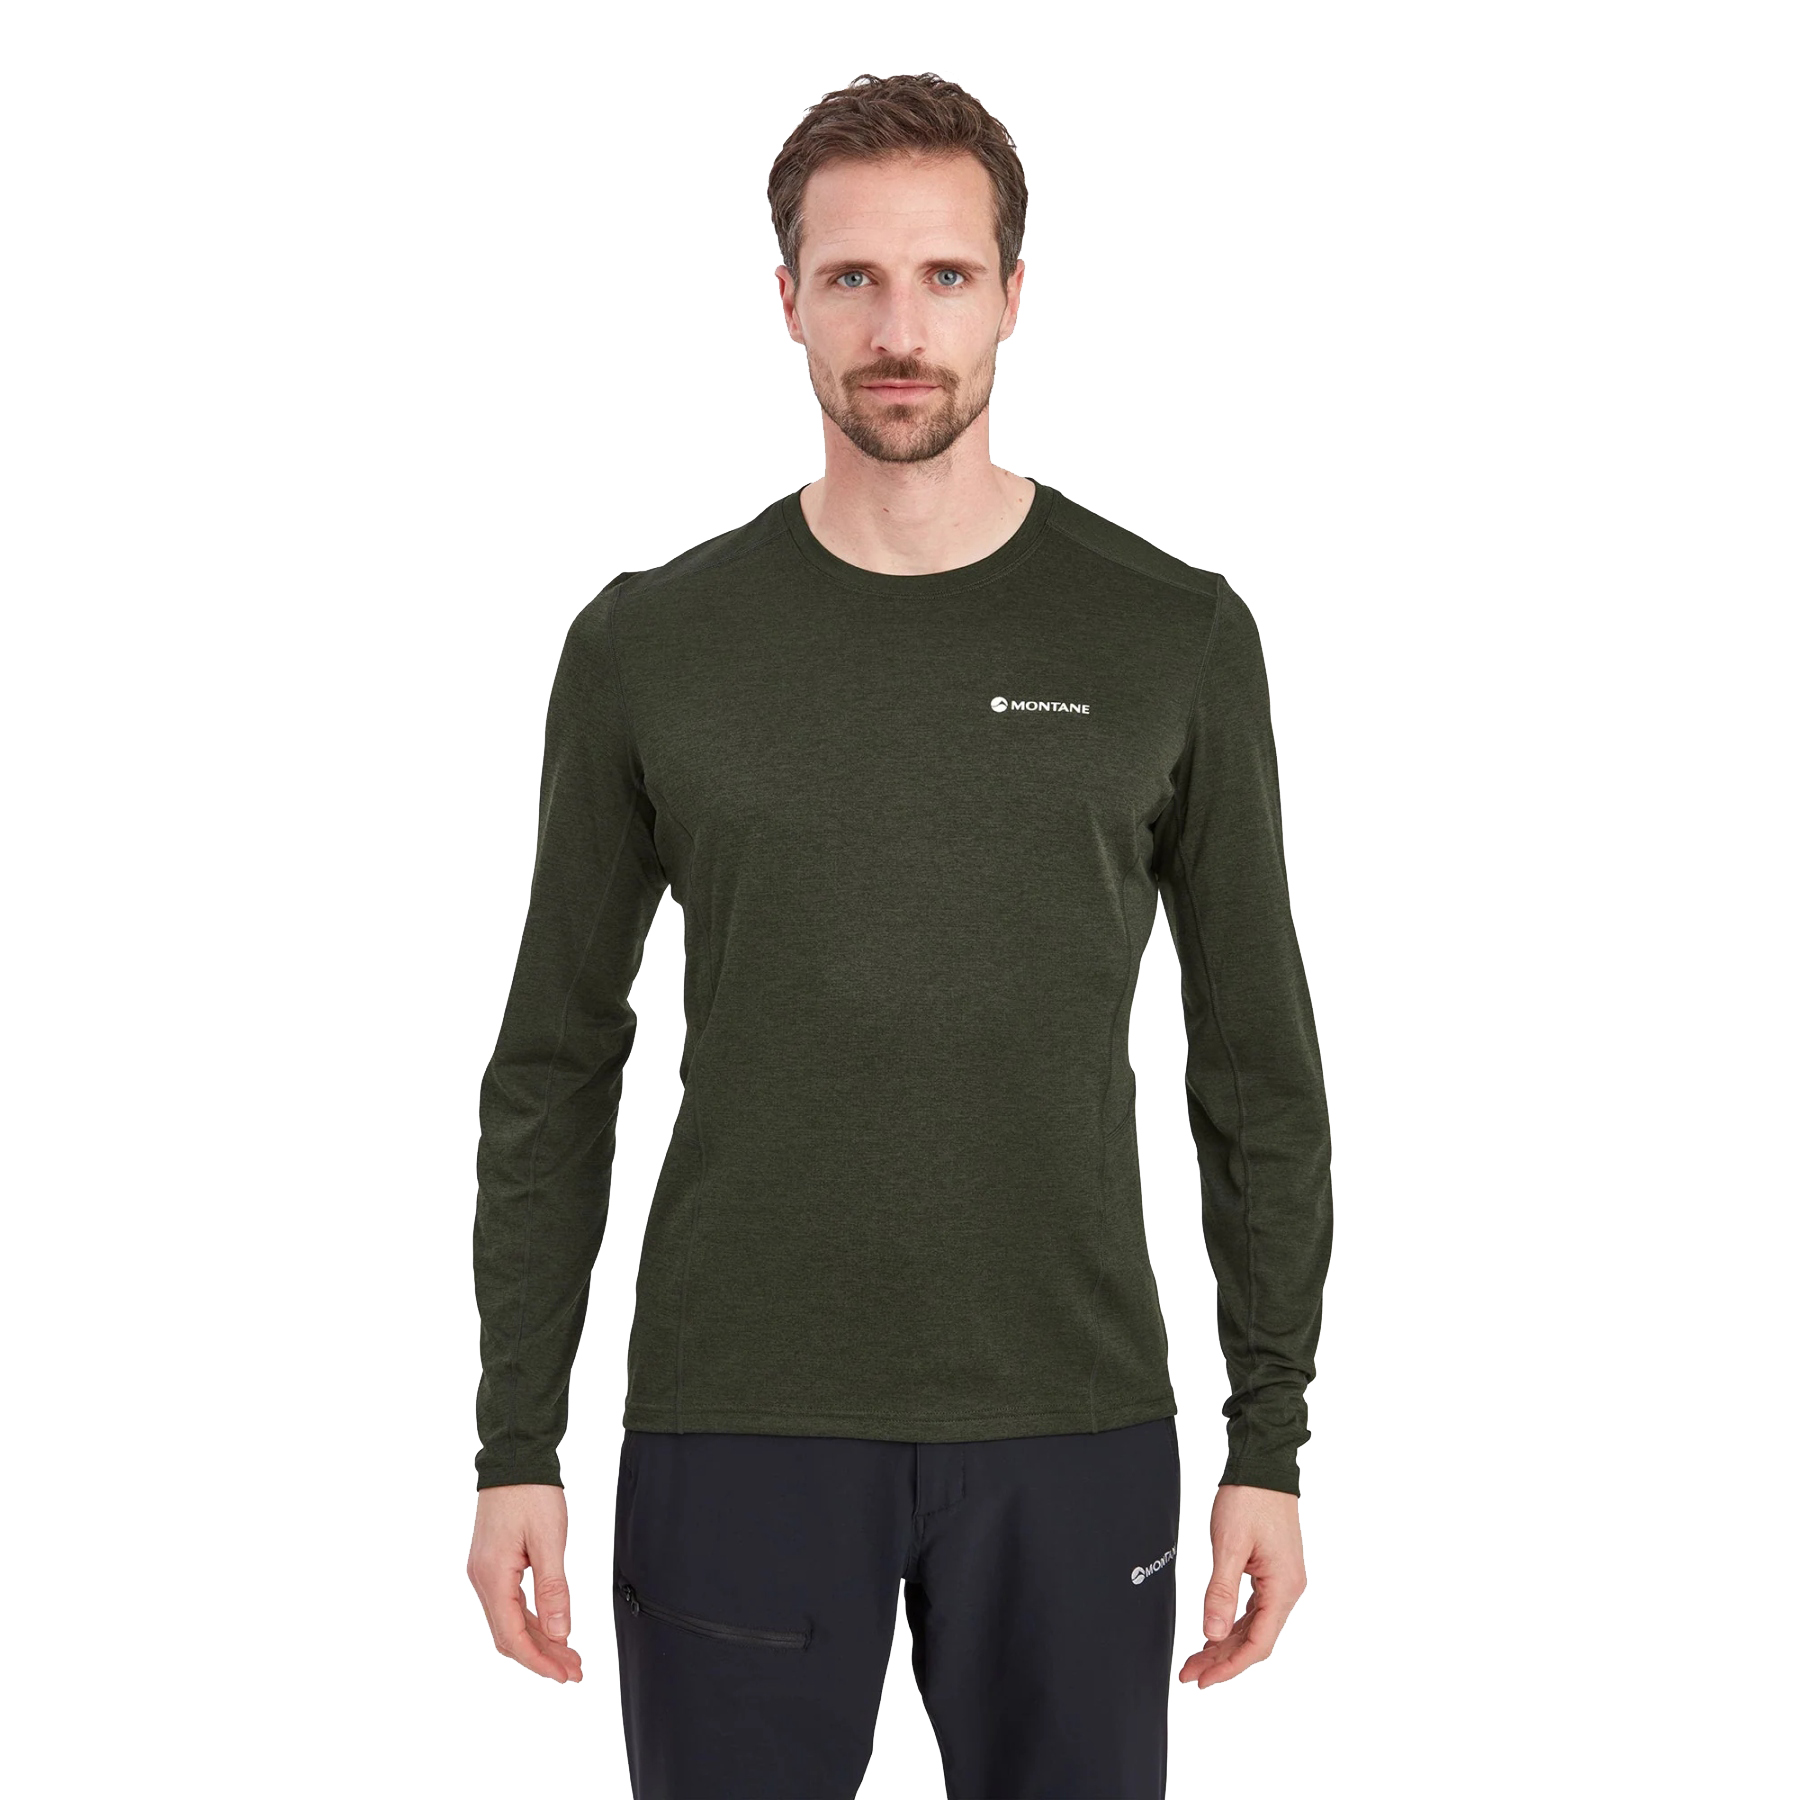 Productfoto van Montane Dart Shirt met Lange Mouwen - oak green